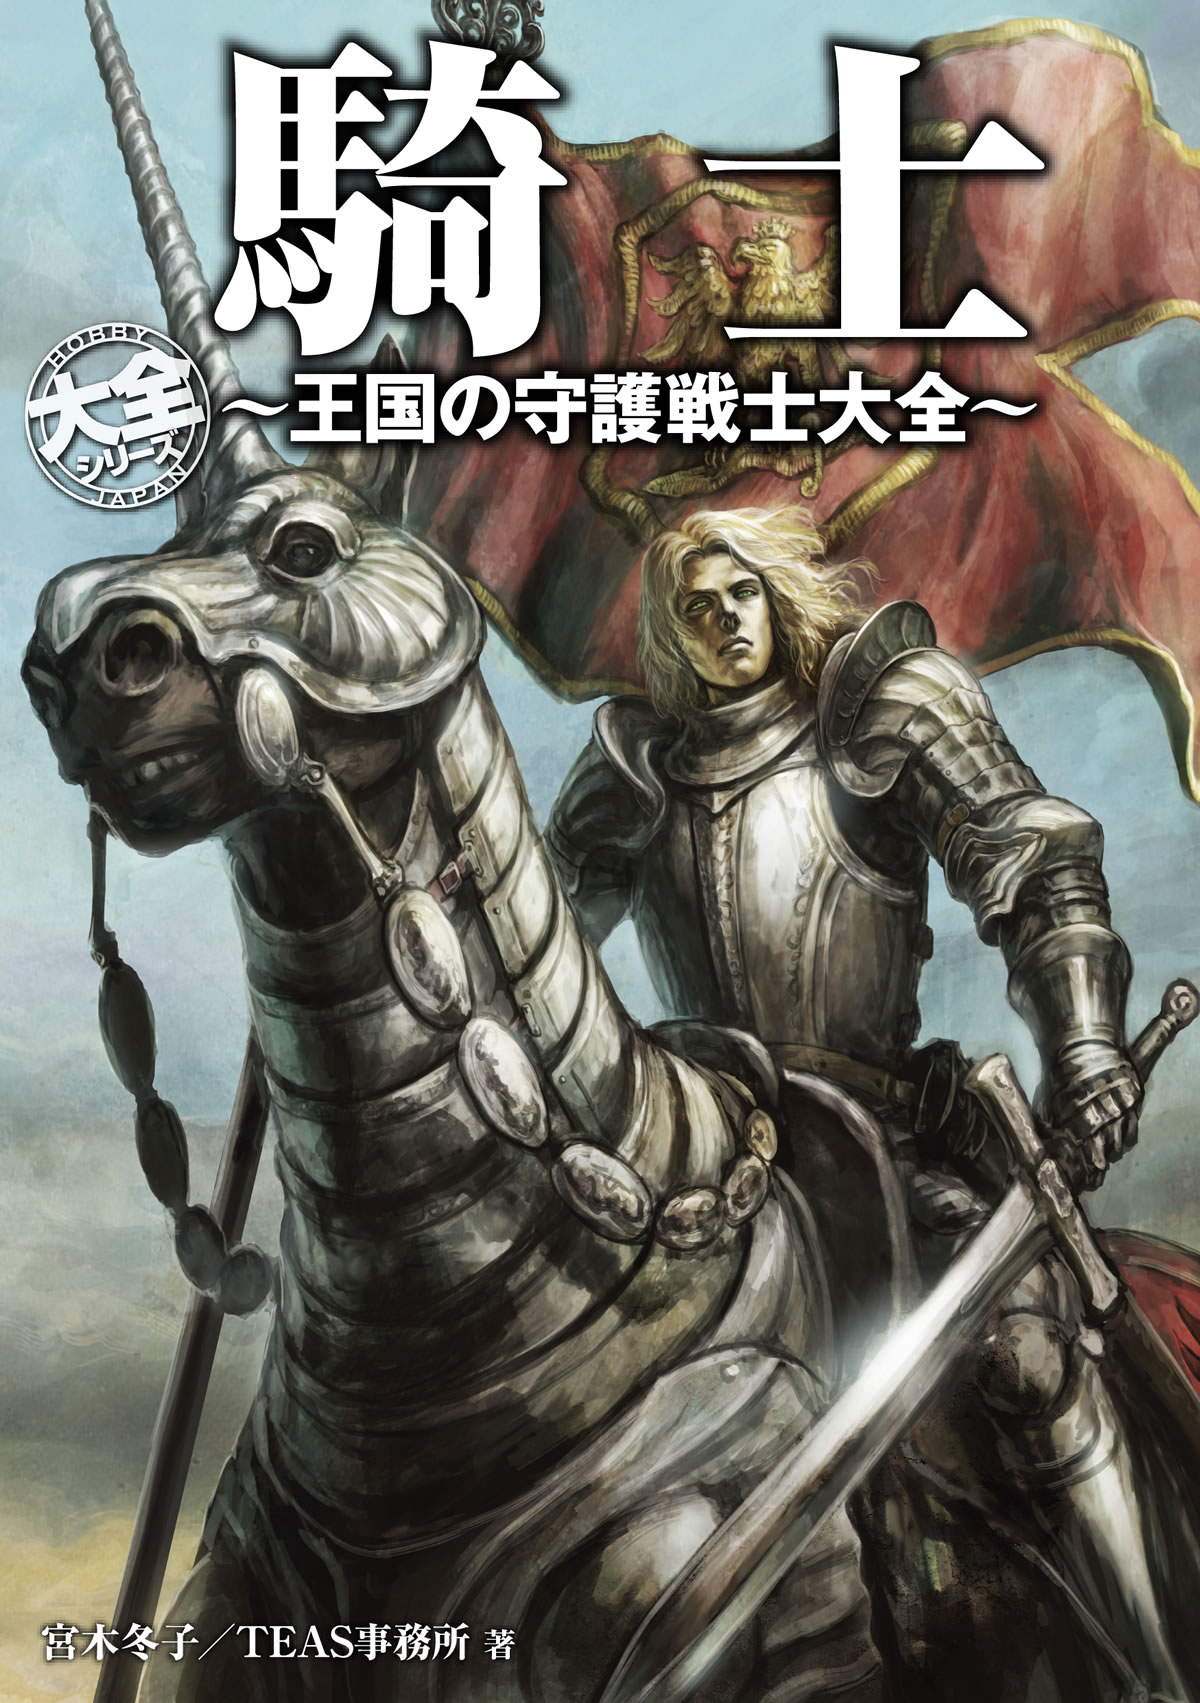 HOBBY JAPAN大全シリーズ最新刊  歴史に名を残した「実在の騎士」と「架空の騎士」総勢162名の騎士を収録！ 「騎士 ～王国の守護戦士大全～」6月28日発売